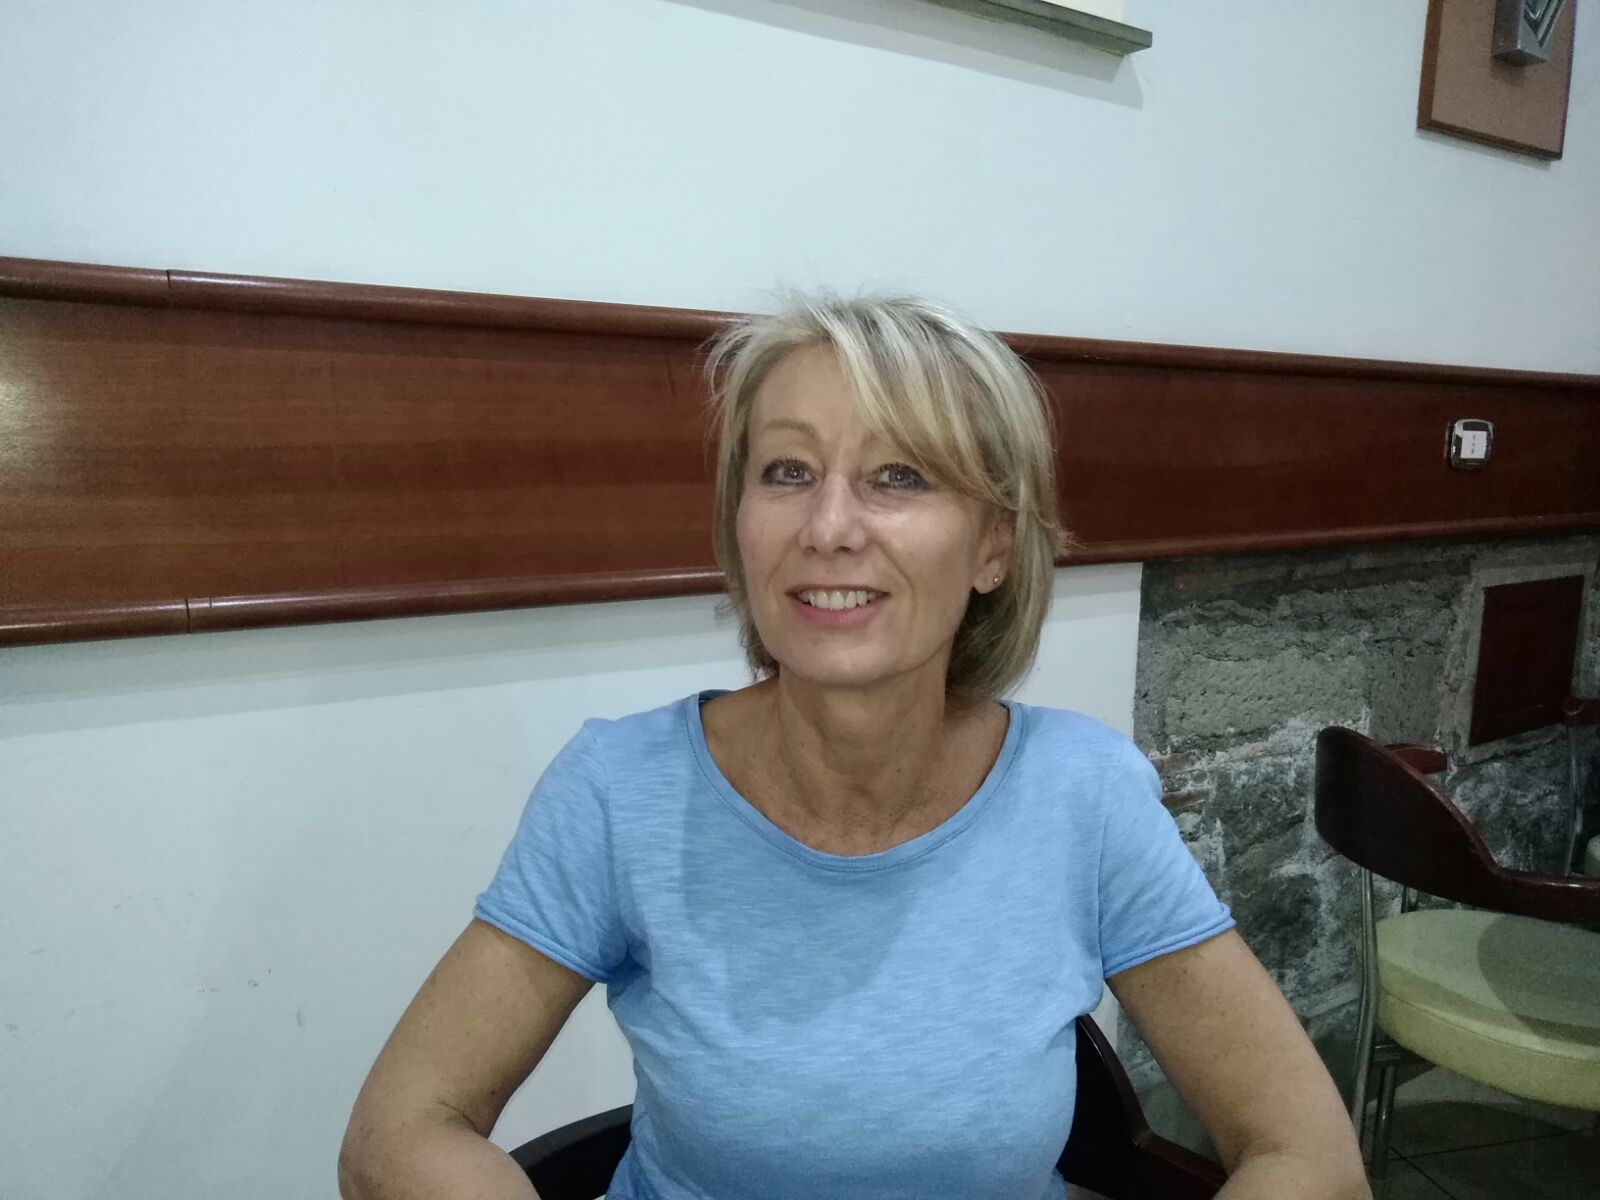 La denuncia, Paola Celletti (Lavoro e Beni Comuni):”Arsenico oltre i limiti anche a Viterbo”